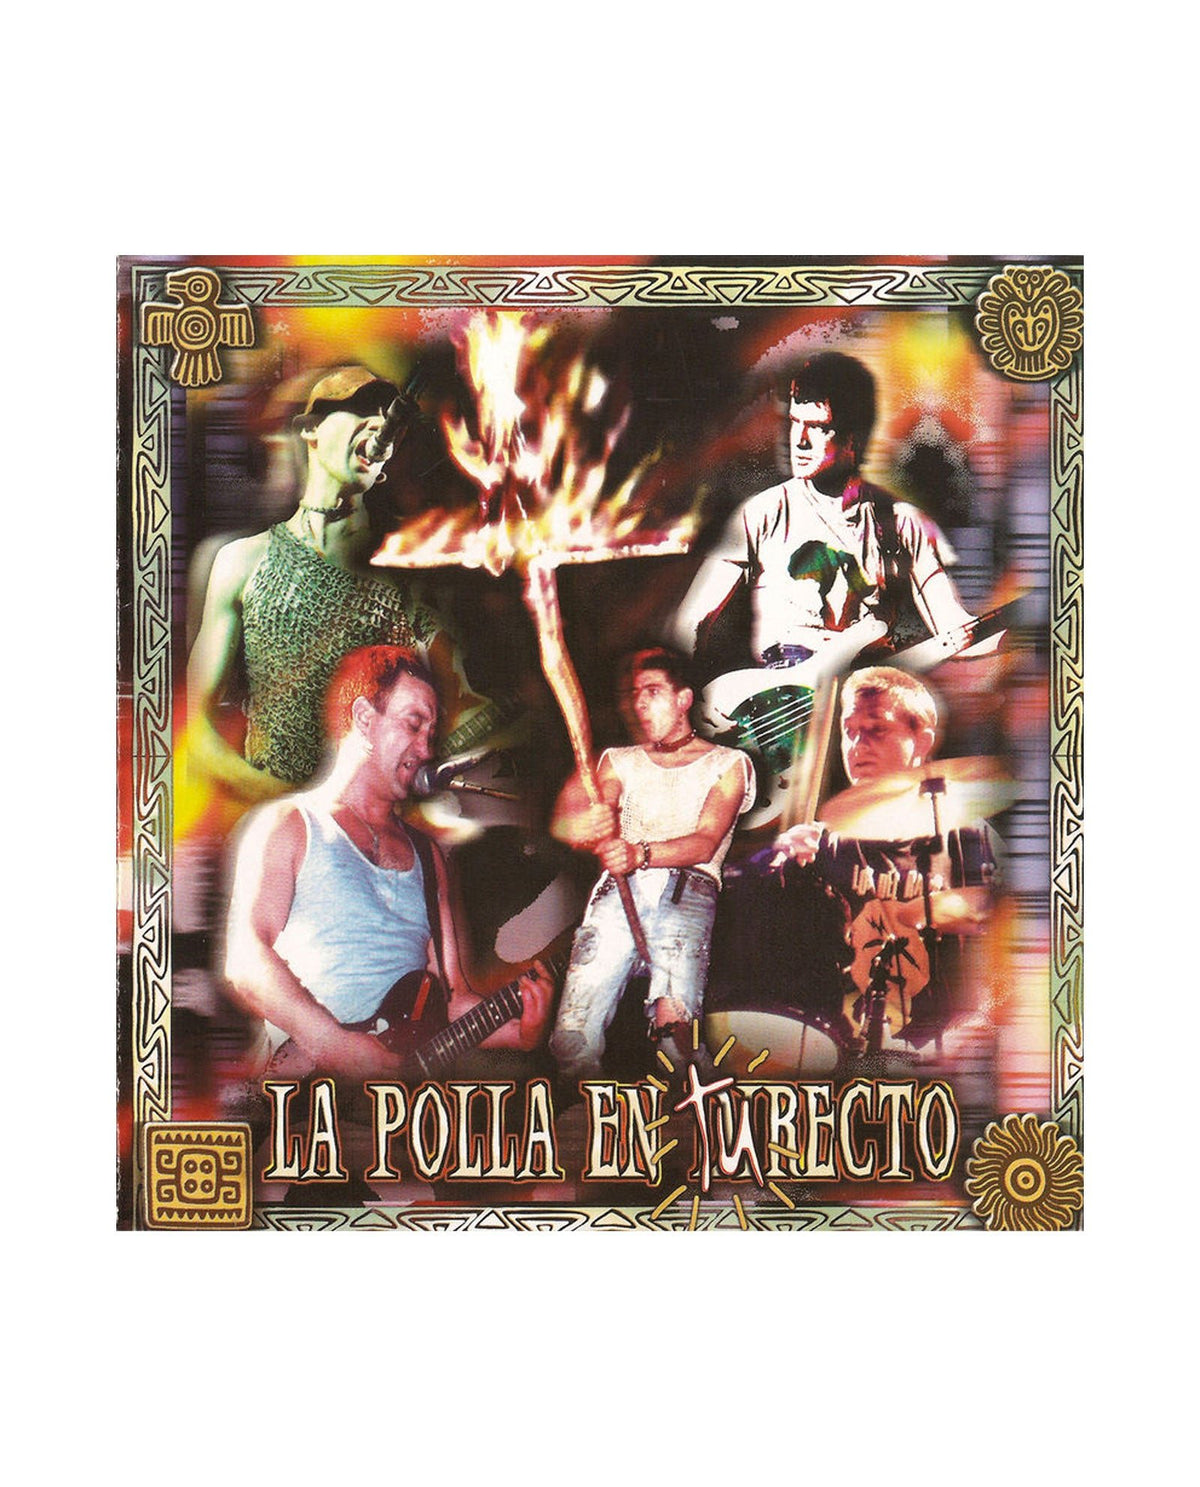 La Polla Records - LP Vinilo "En tu recto" - Rocktud - La Polla Records